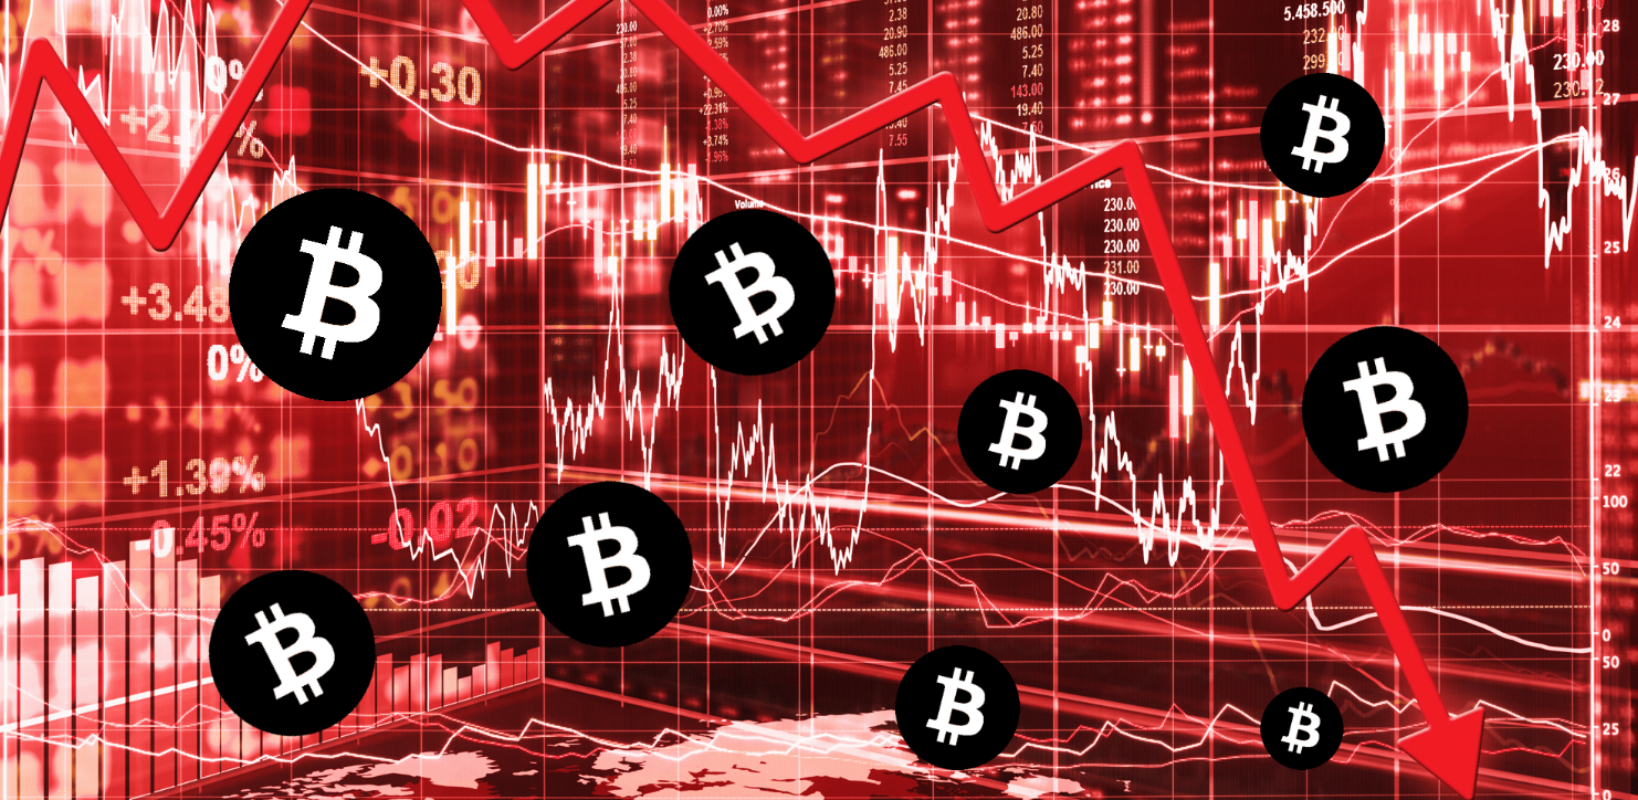 crypto market will recover